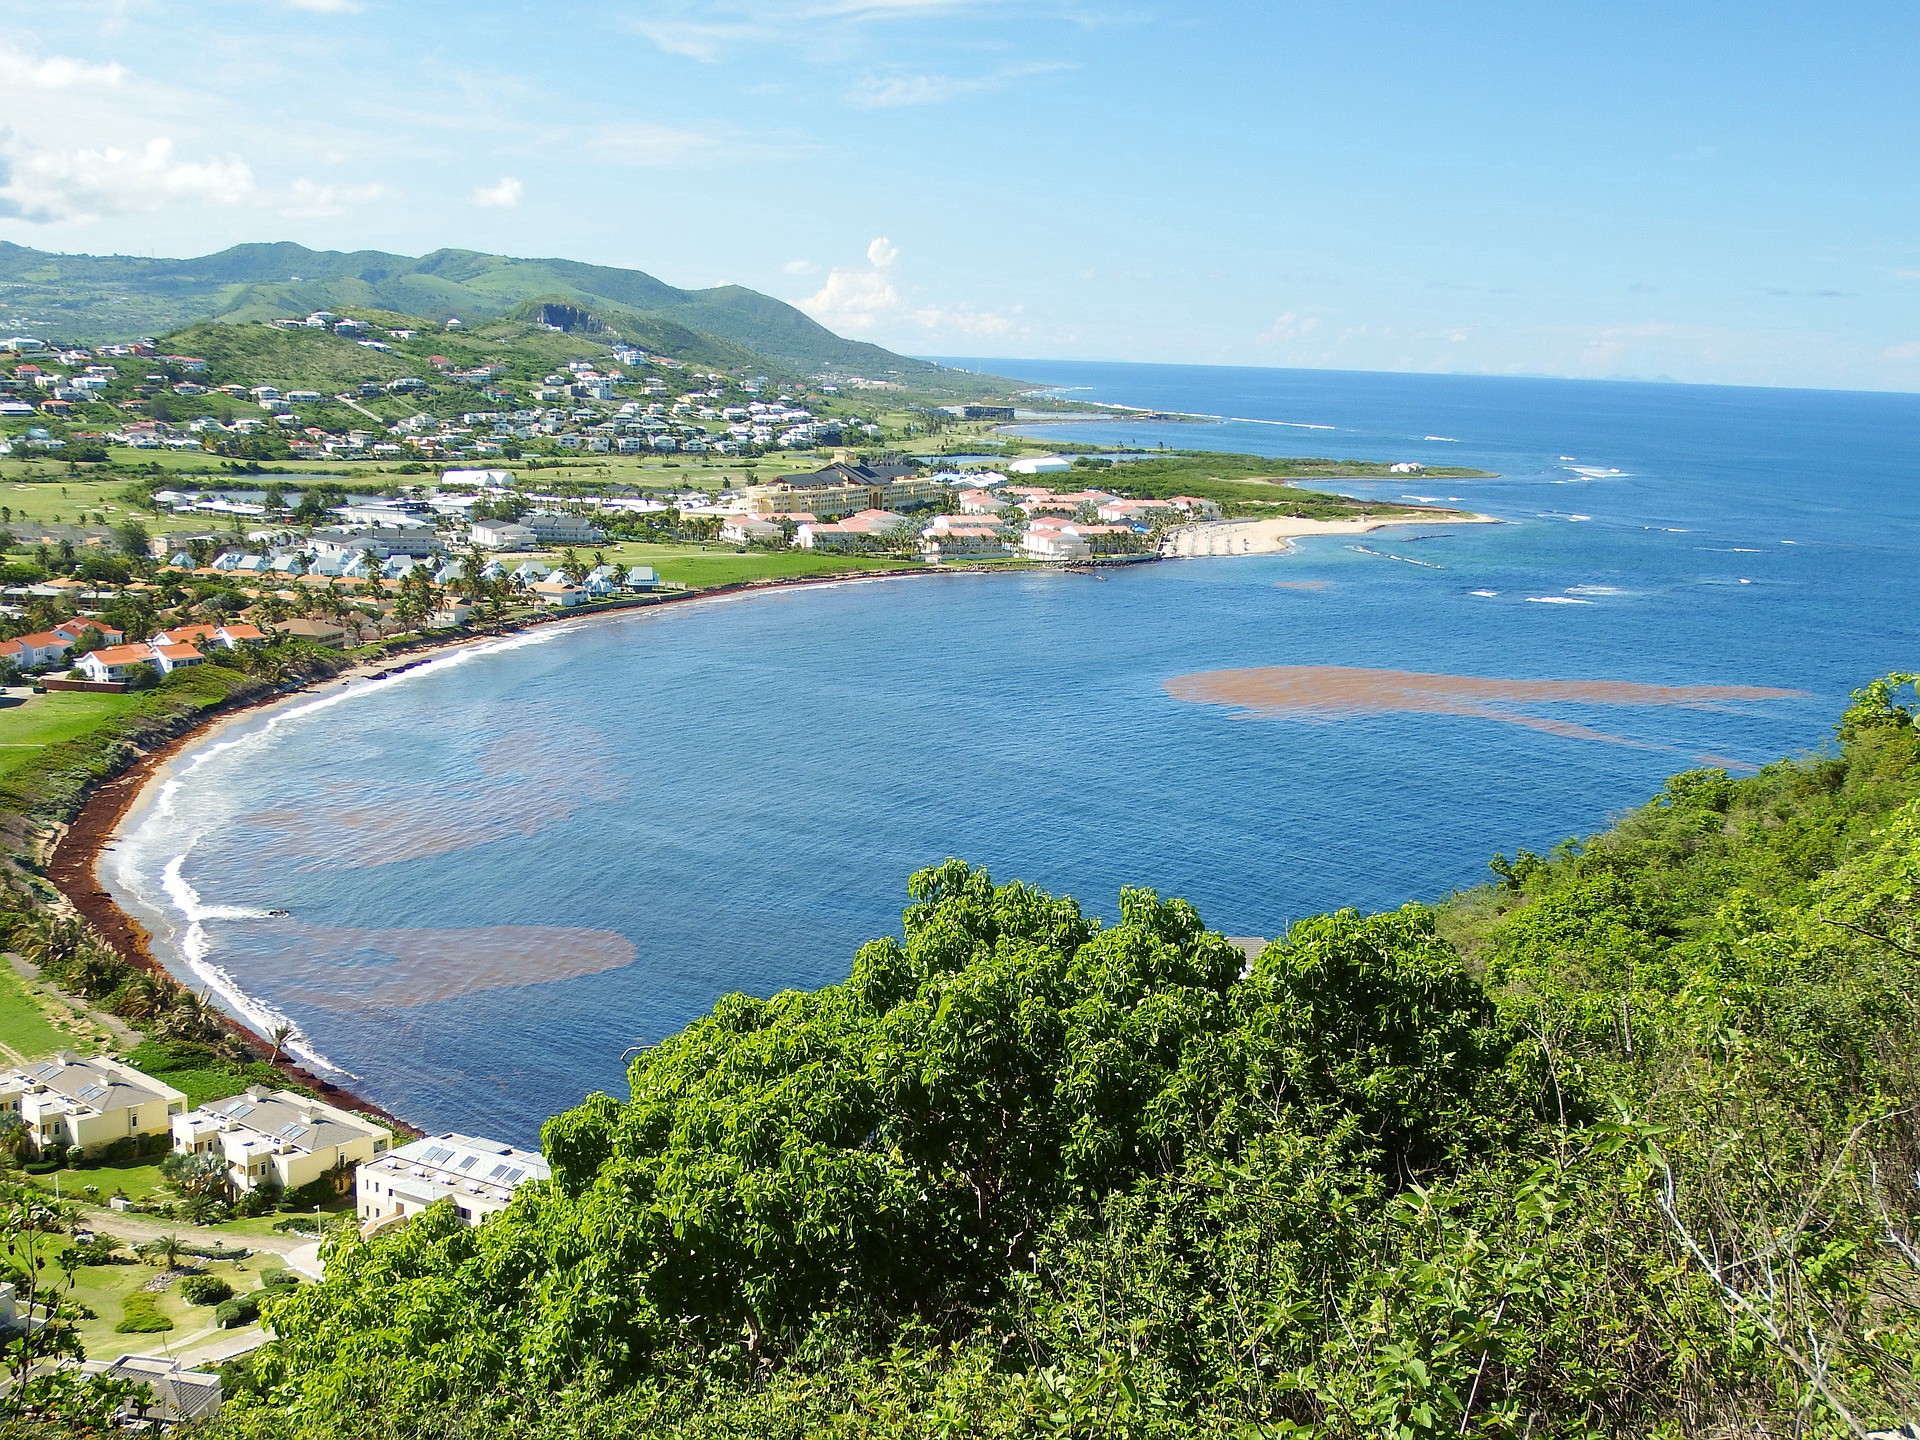 St. Kitts and Nevis Citizenship Program